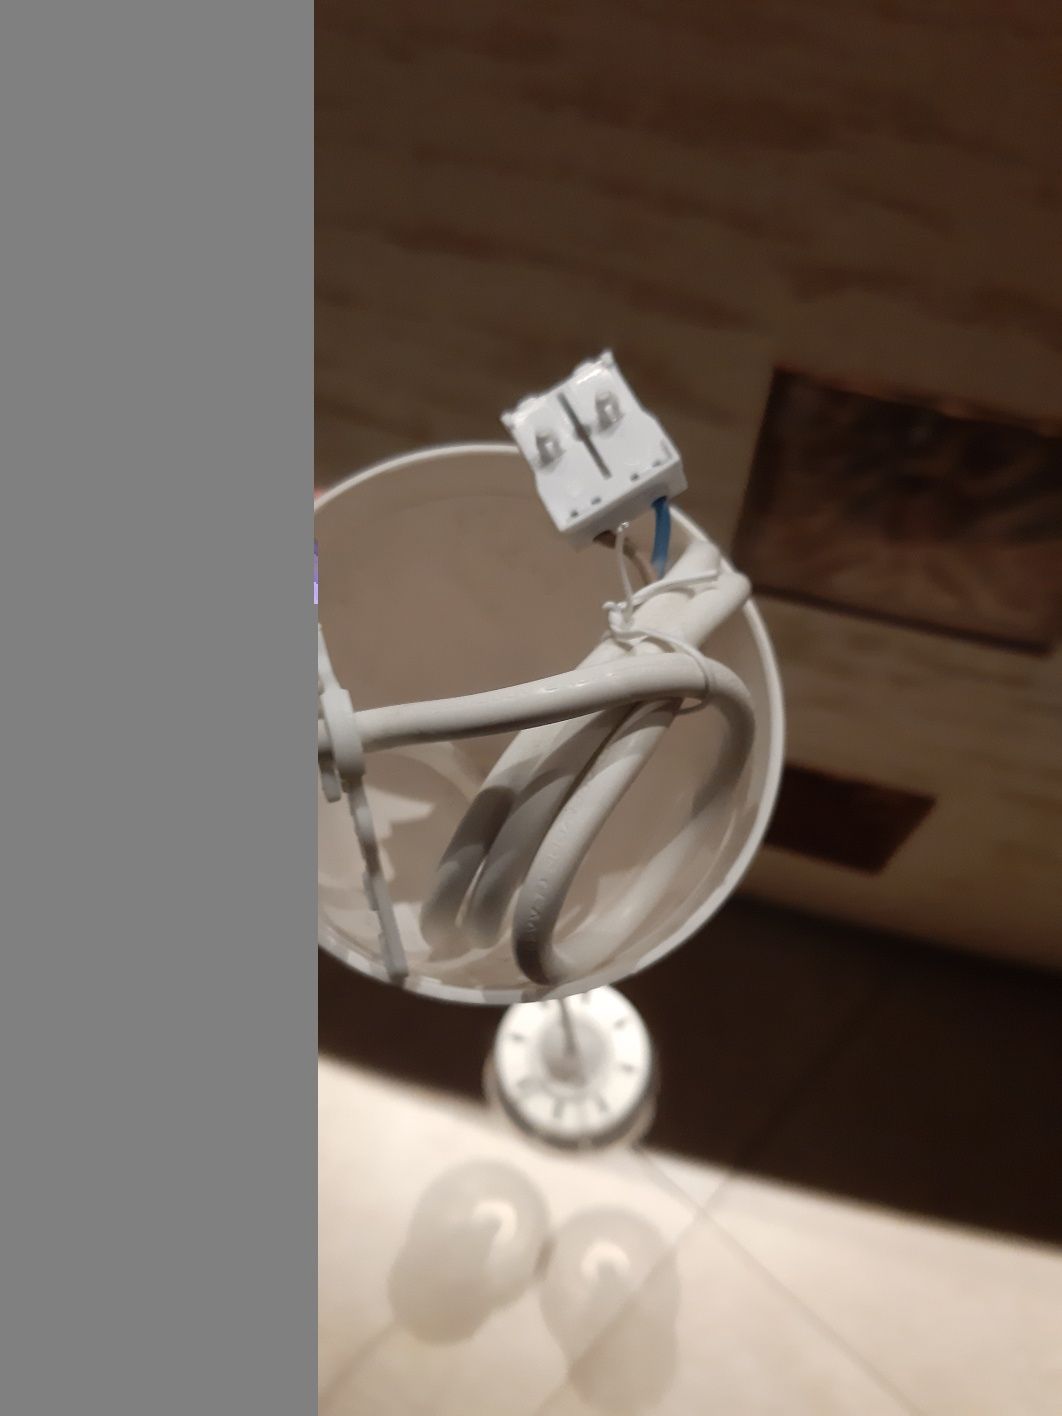 Lampa lampka kolekcja loft tkmaxx home do powieszenia sufit regulacja